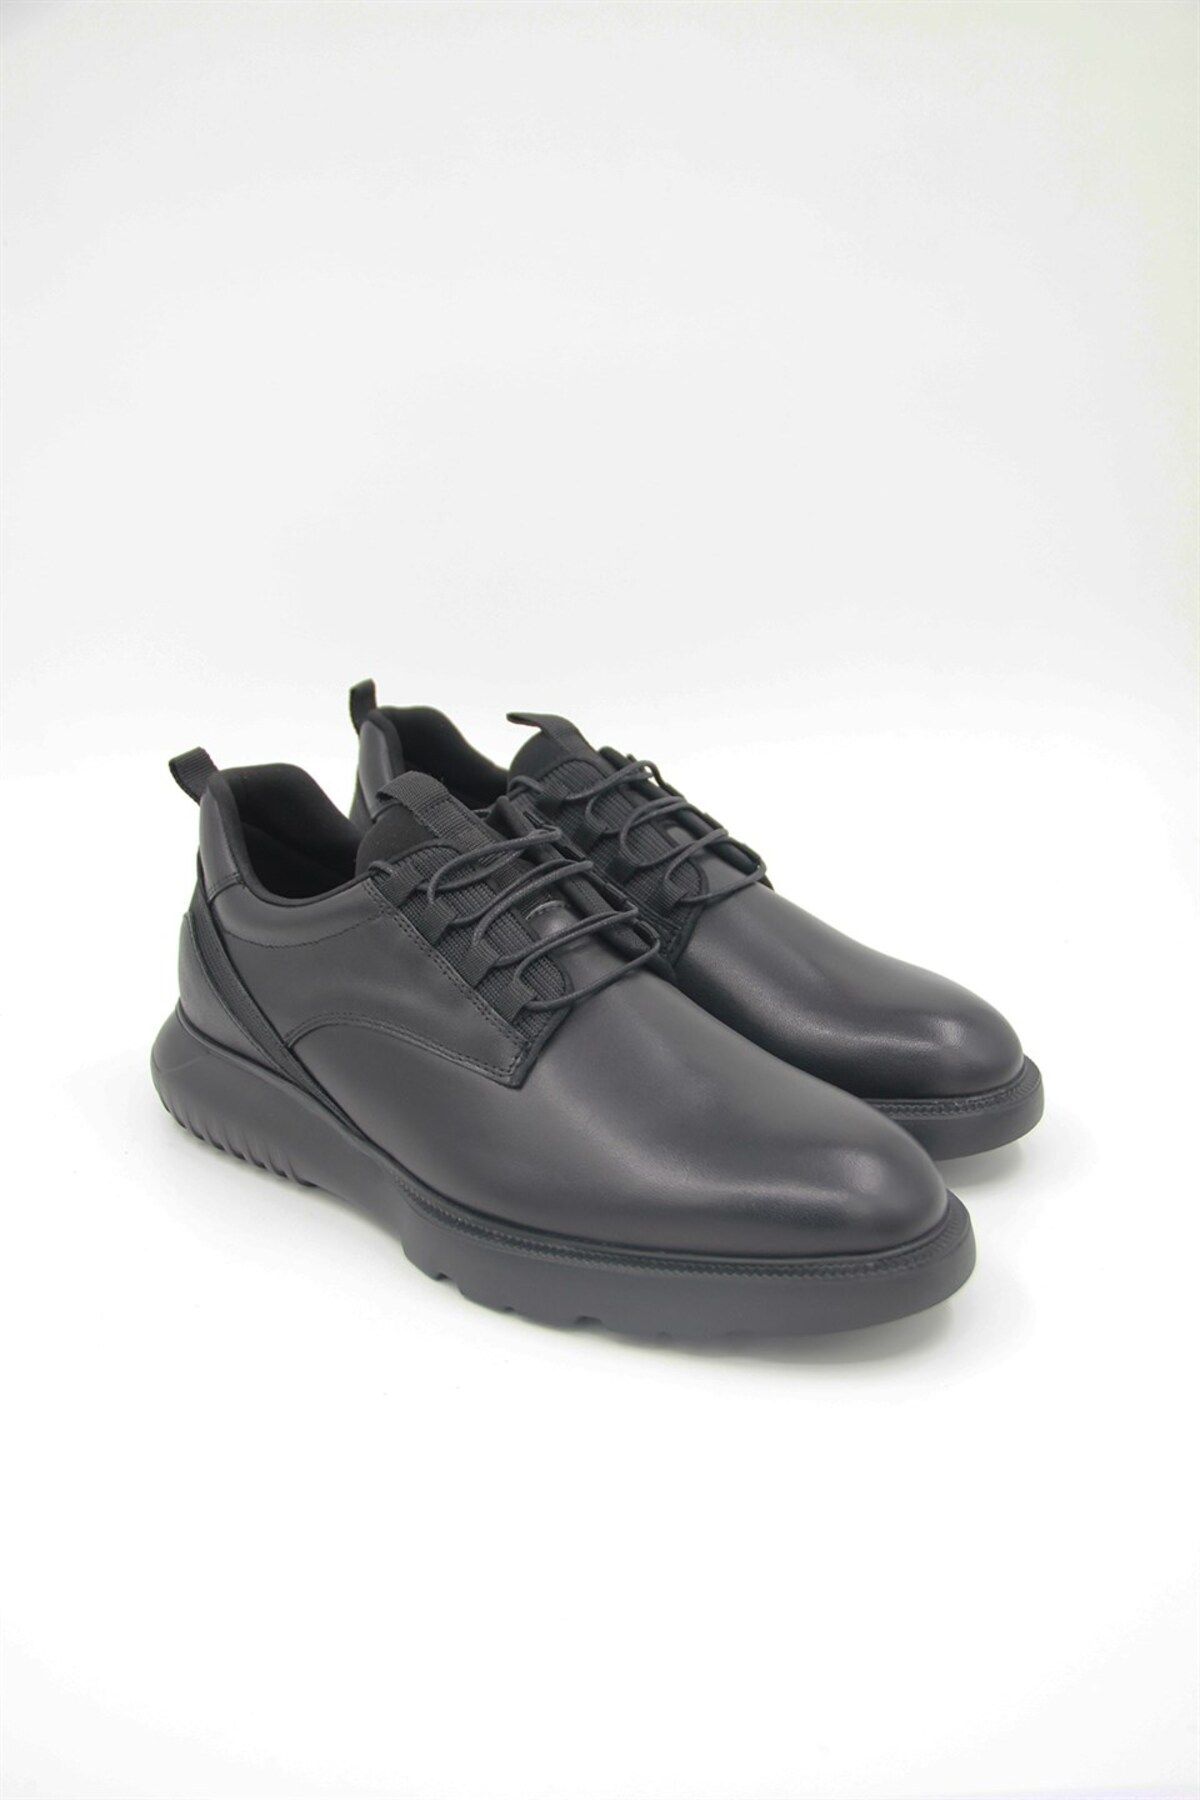 Libero Erkek Spor Ayakkabı L4635 - Siyah